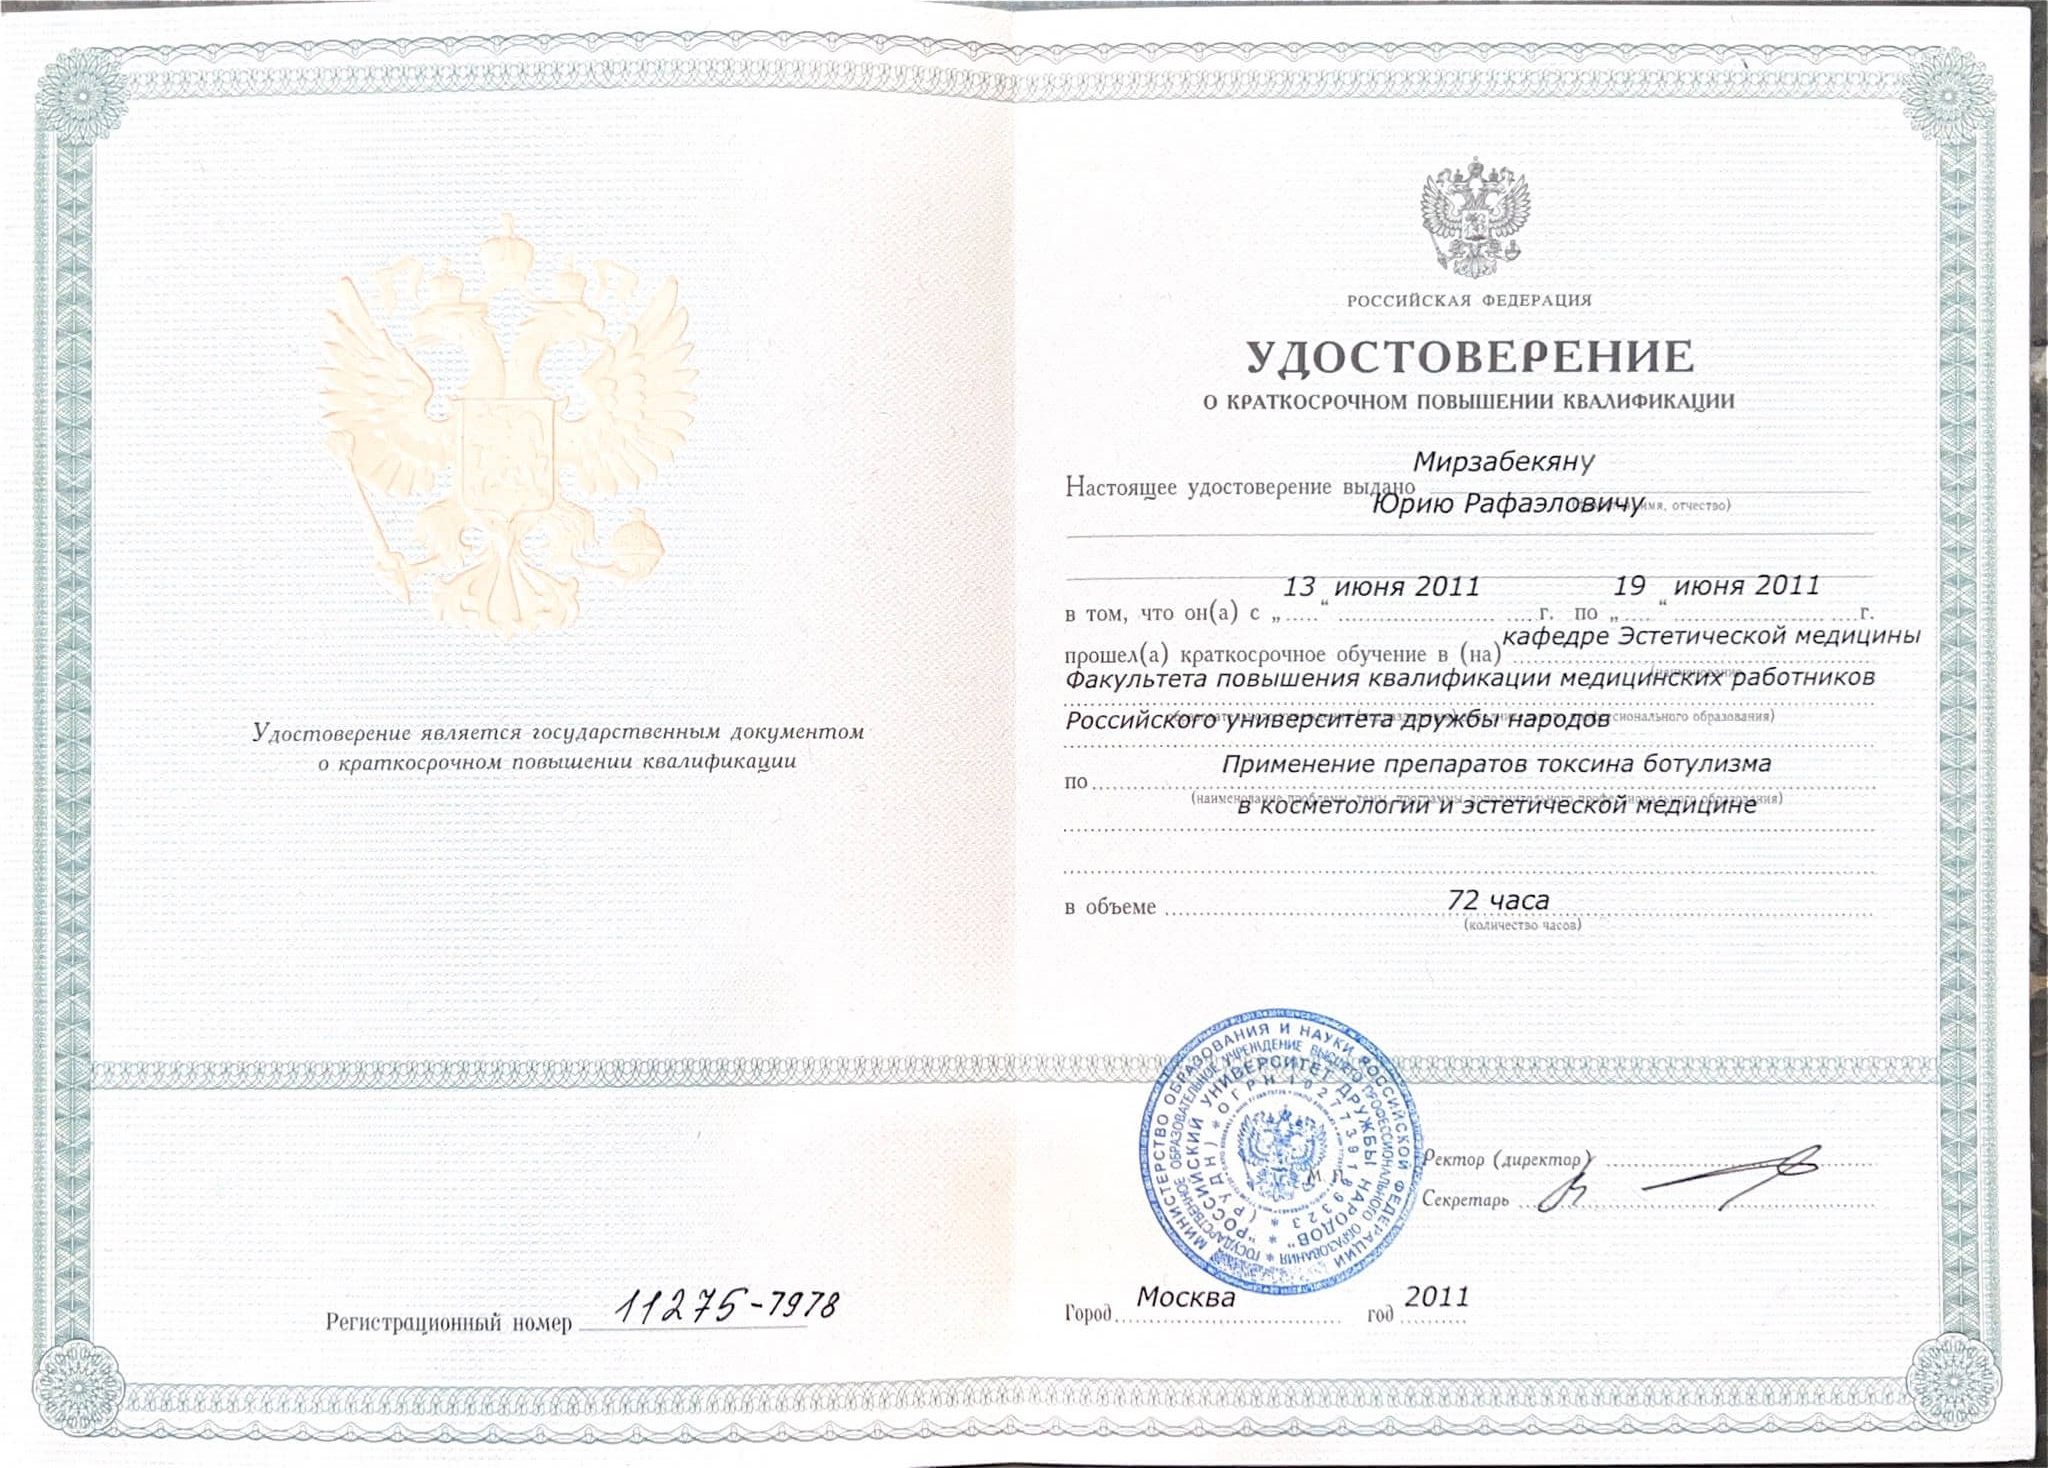 Сертификат врача